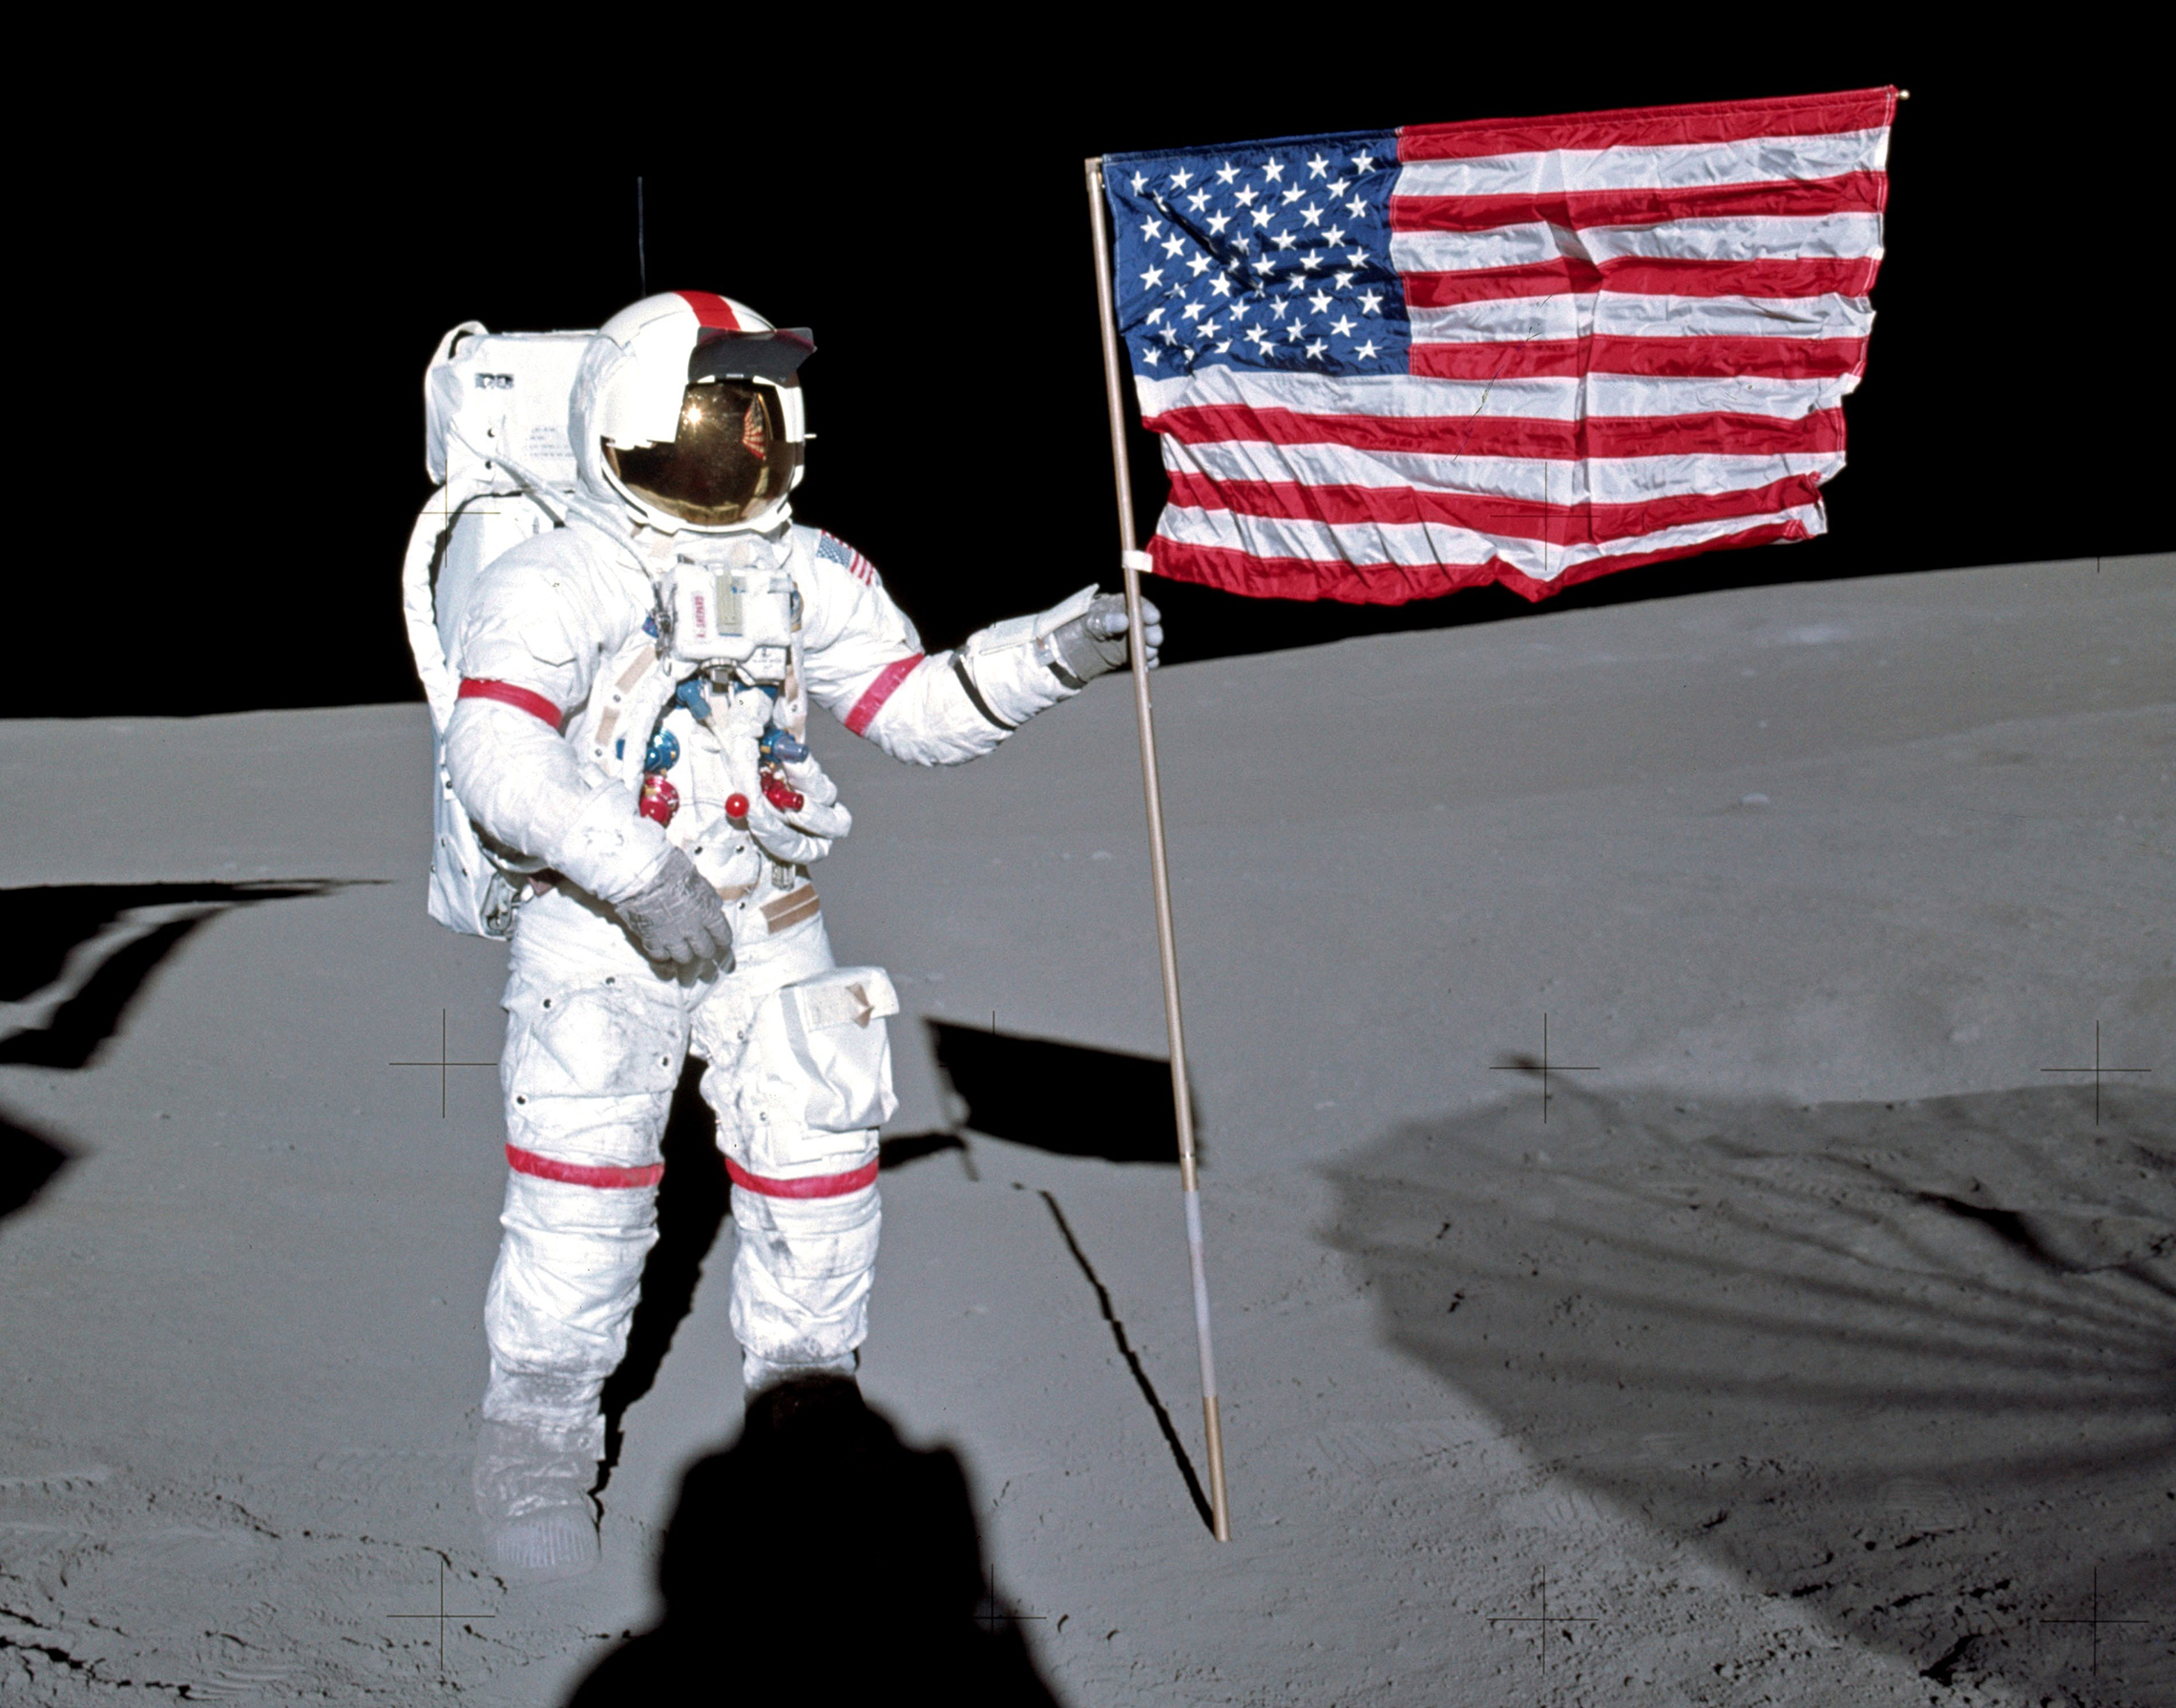 Alan Shepard plantează steagul American pe lună.5 februarie 1971: astronautul Alan B. Shepard Jr., comandantul misiunii de aterizare lunară Apollo 14, stă lângă steagul SUA pe suprafața lunară în primele momente ale primei activități extravehiculare a misiunii. În timp ce Shepard și astronautul Edgar D. Mitchell, pilotul modulului lunar, explorau luna, astronautul Stuart A. Roosa, pilotul modulului de comandă, manevra modulul serviciului de comandă pe orbita lunară. (Foto NASA)